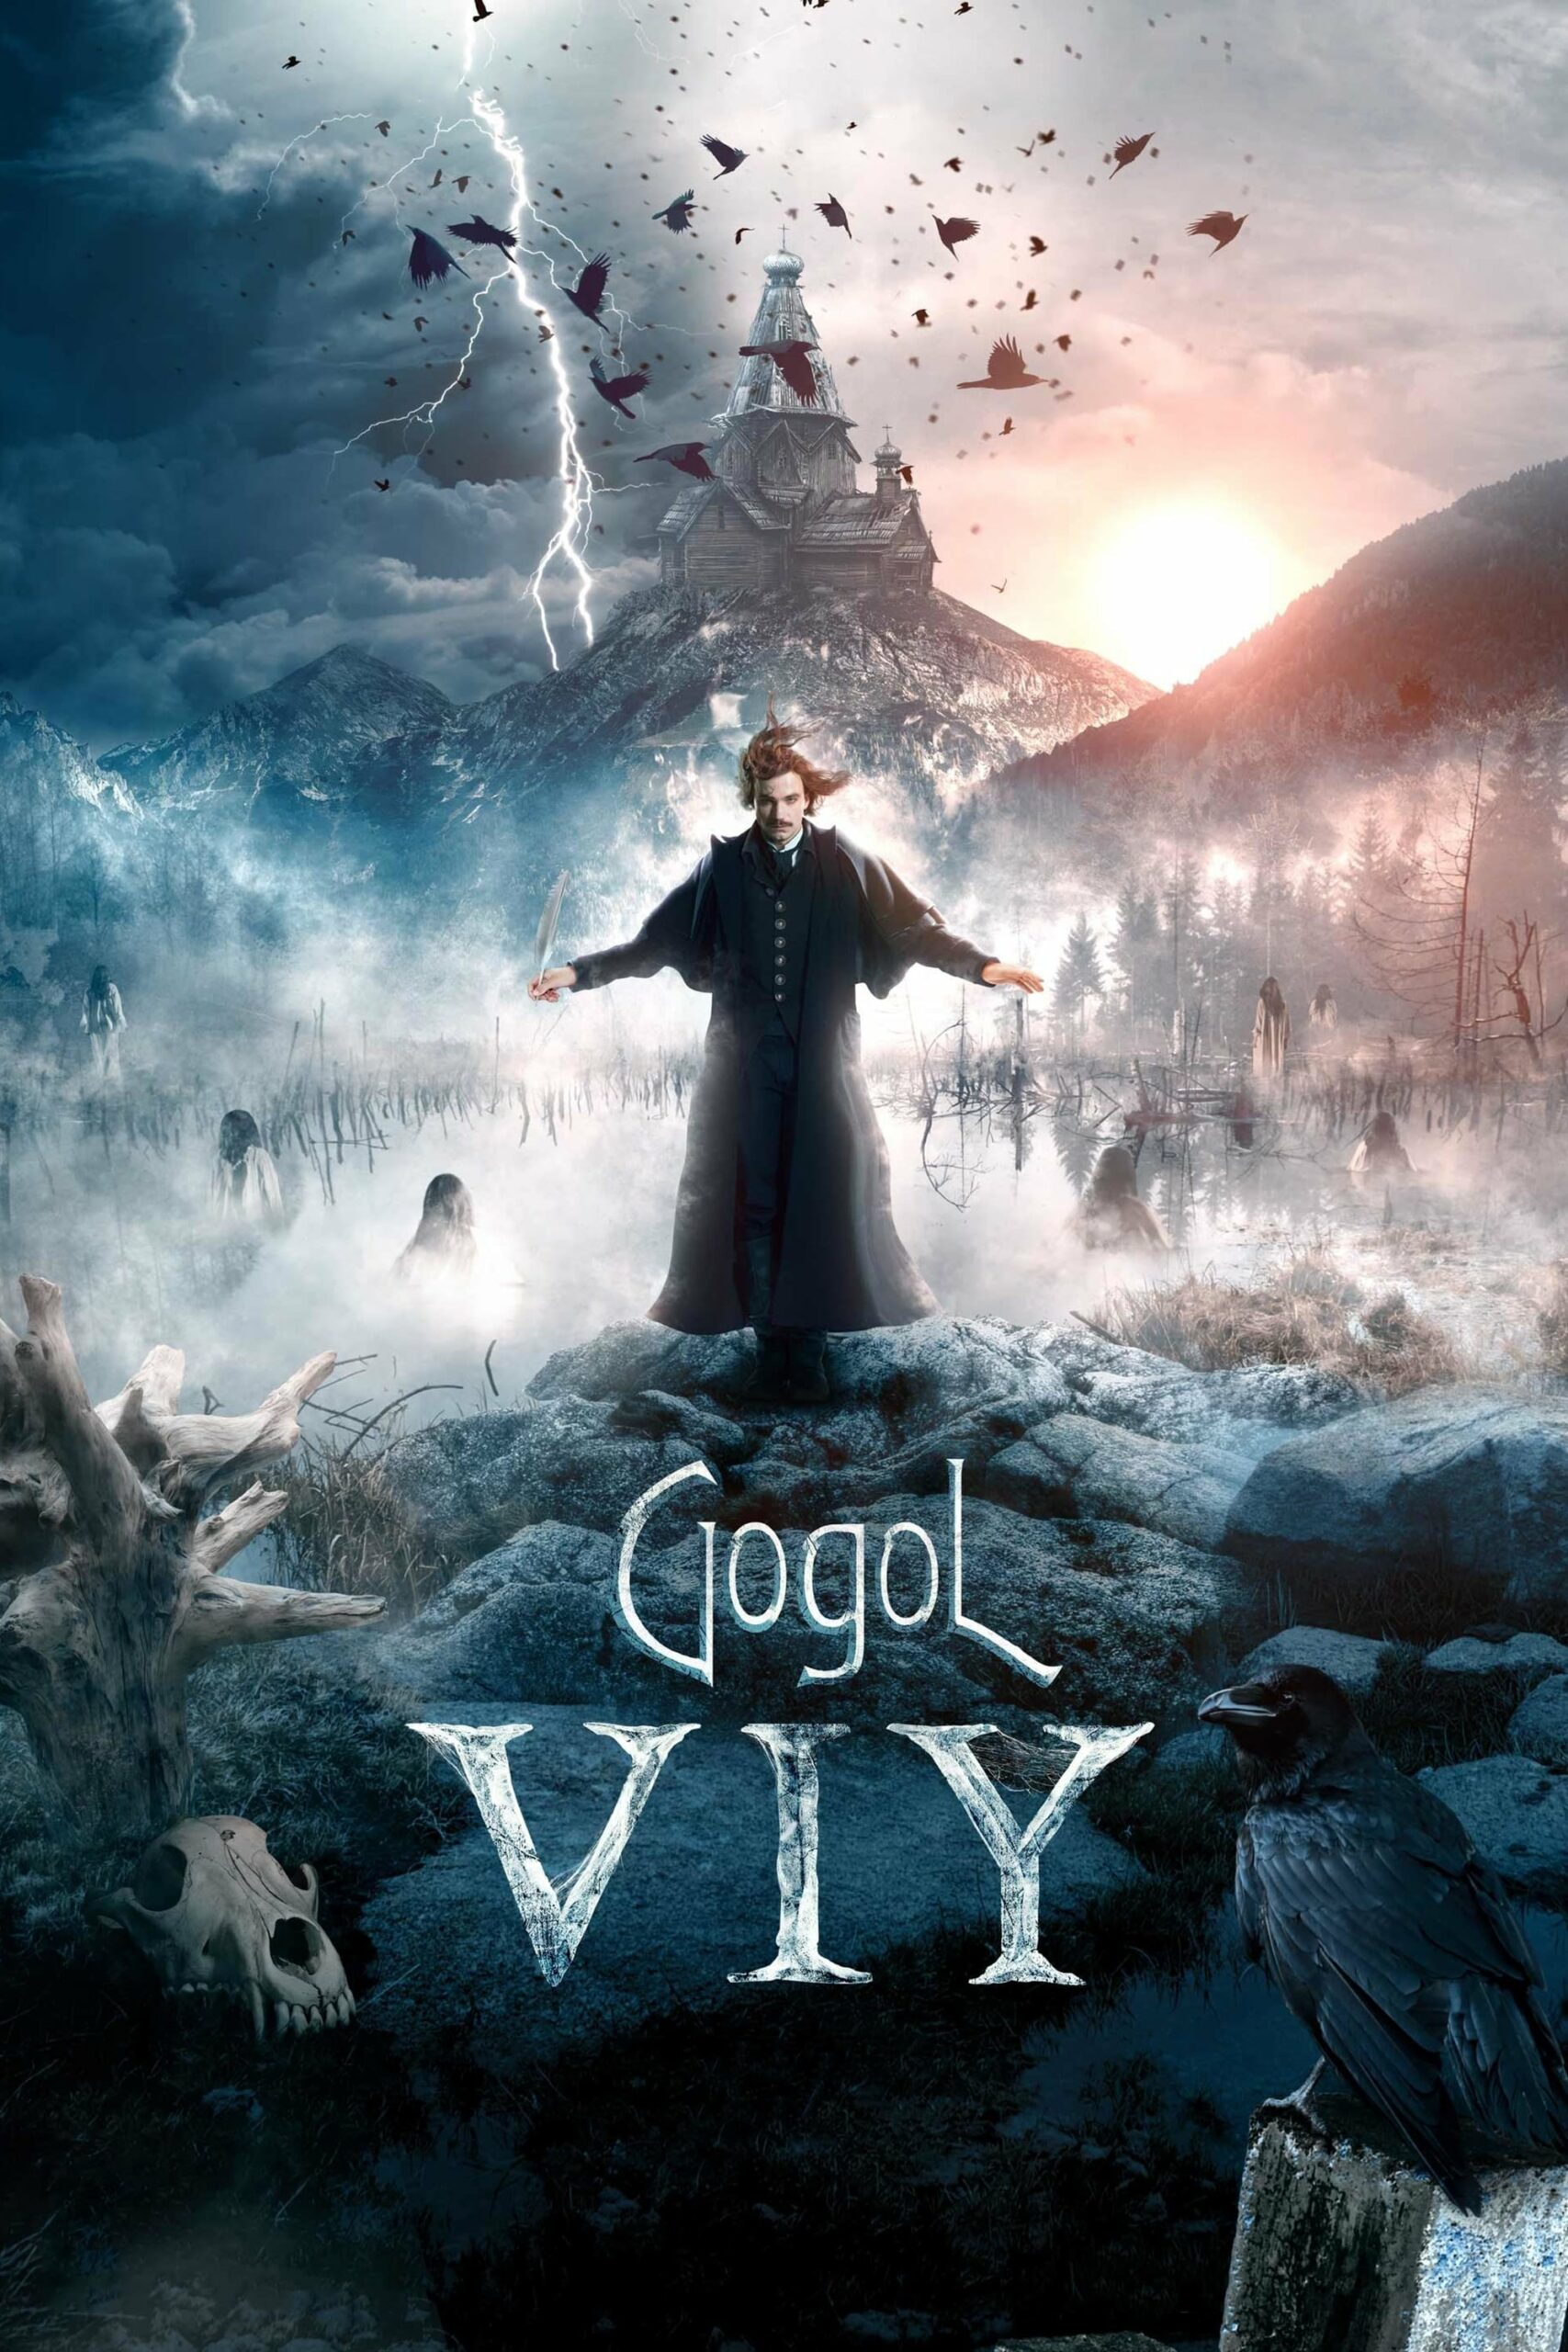 Plakát pro film “Gogol. Vij”